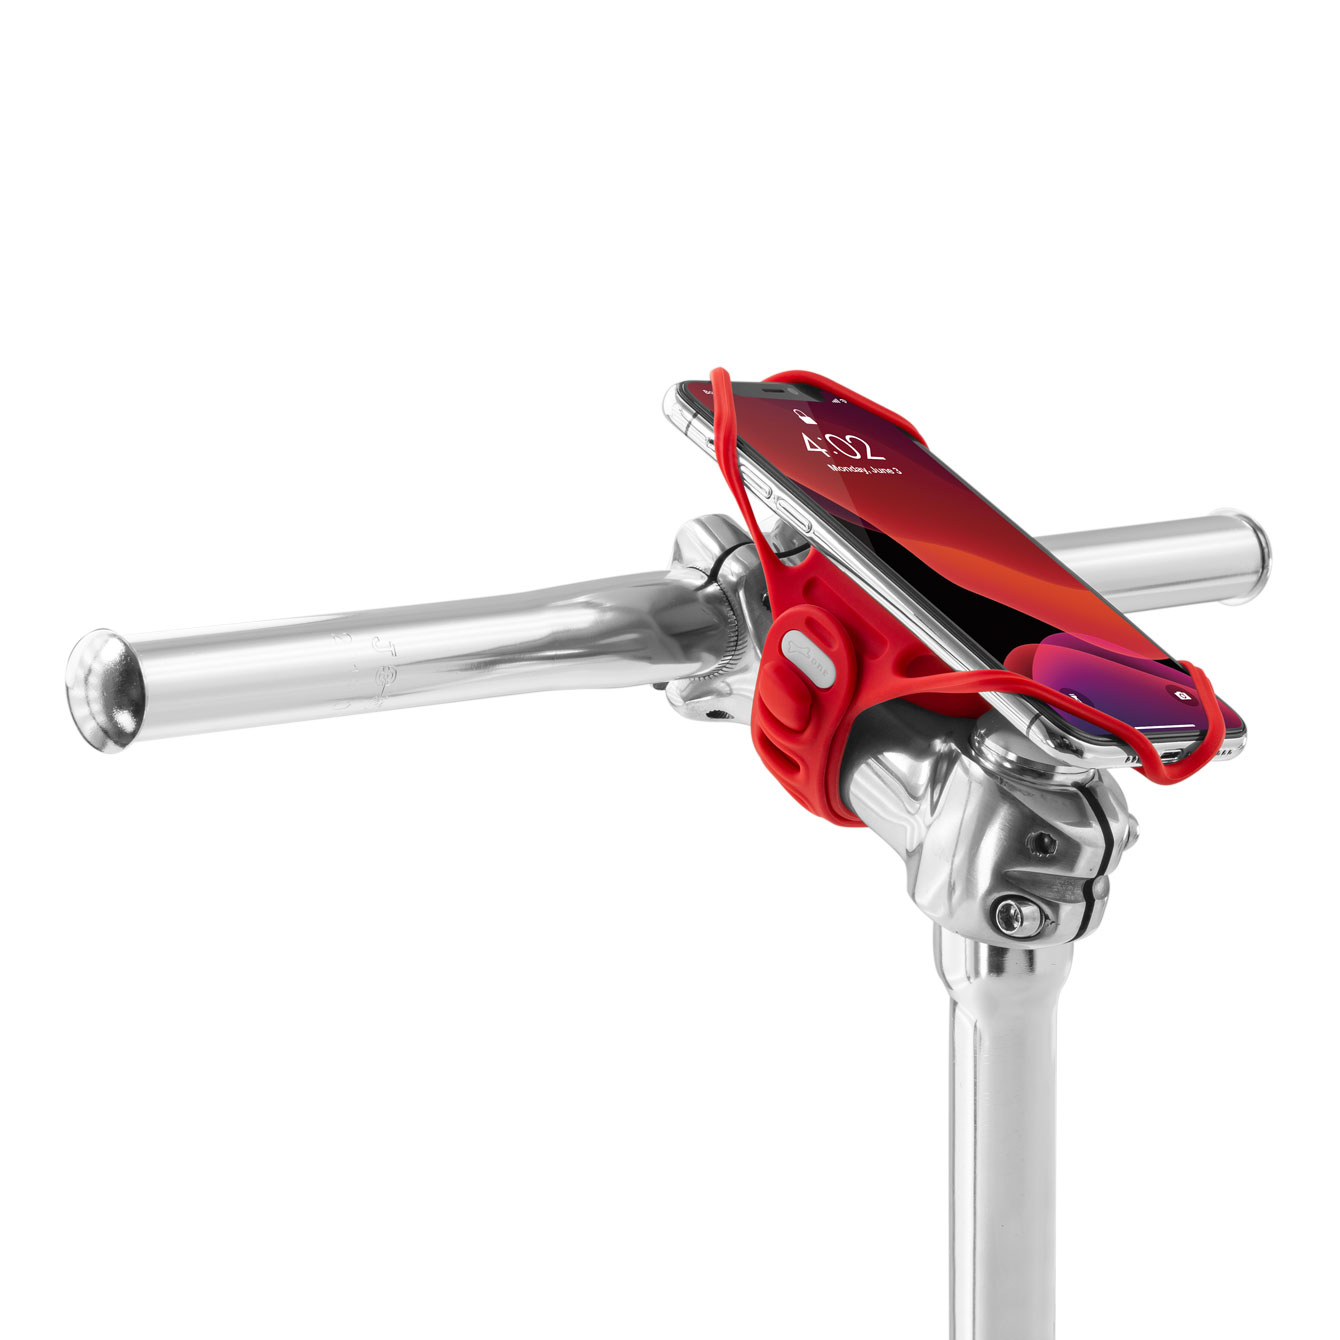 Bone(ボーン)Bike Tie Pro 4 + Power Strap セット自転車用 ステムマウント スマホ ホルダー - 自転車ステム 用スマホホルダー - スポーツ - 製品情報 - Bone ボーン